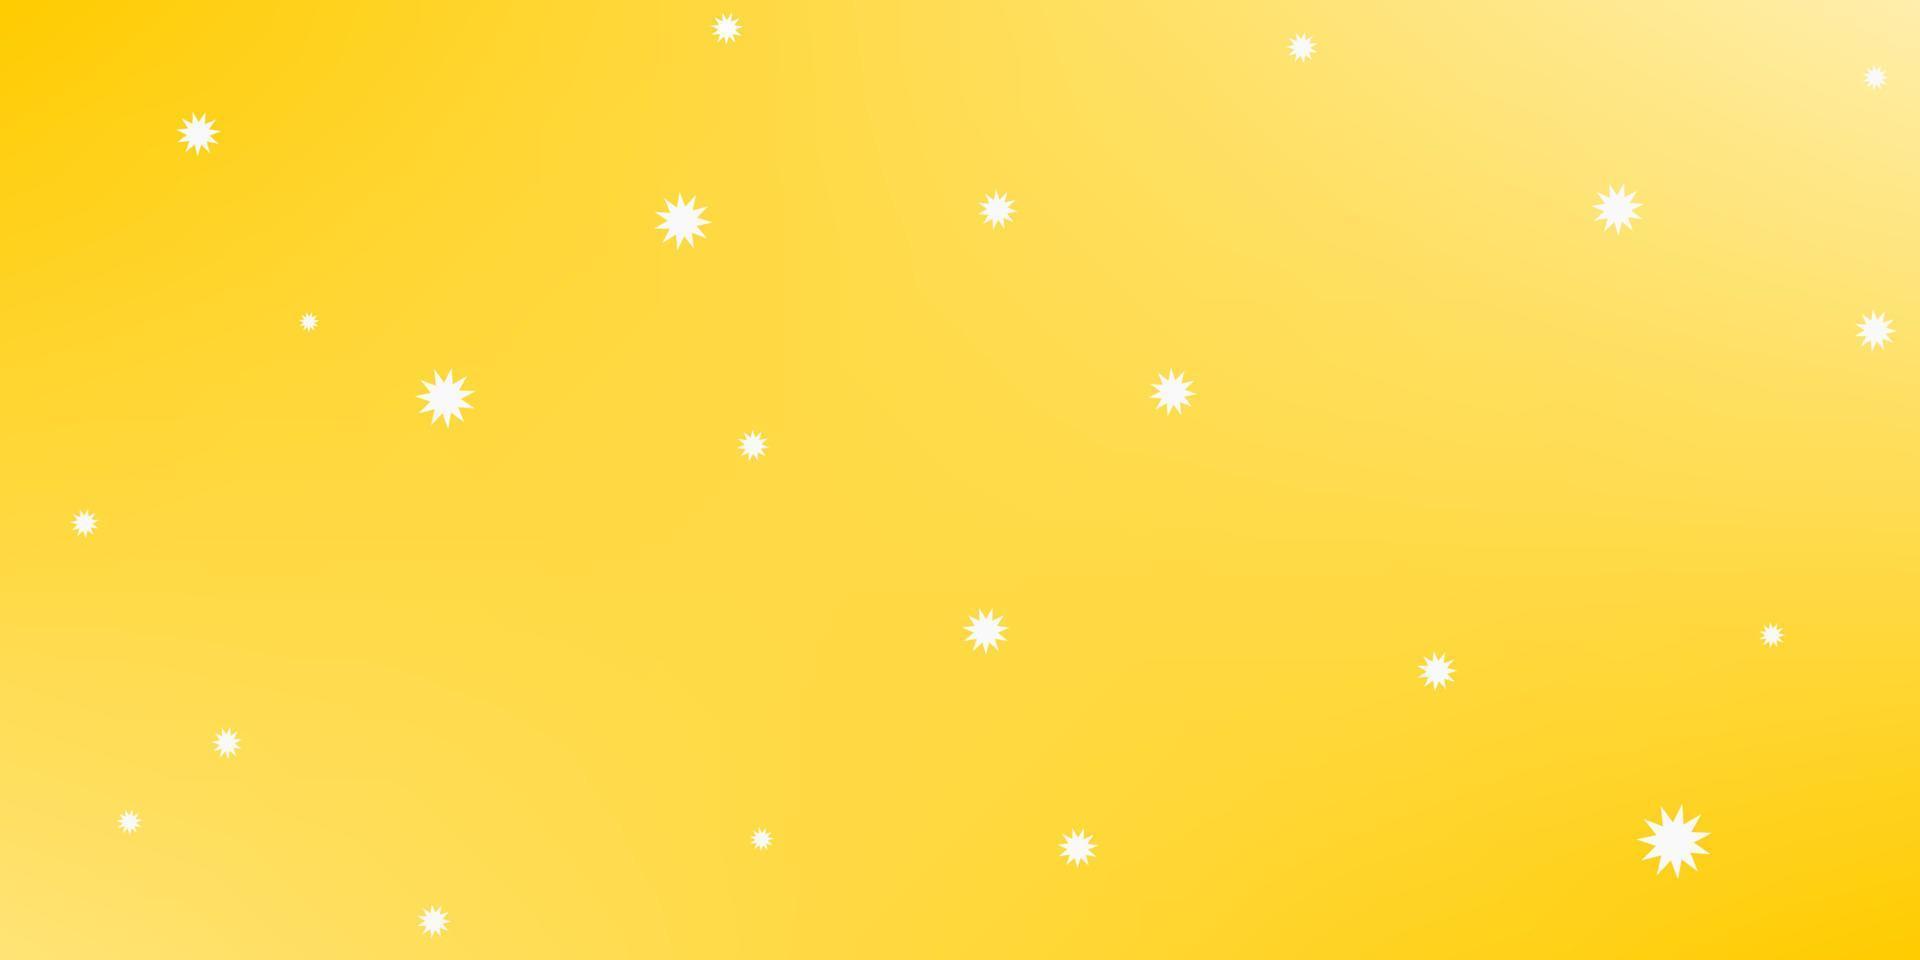 ljus gul glöd bakgrund med vit prickar som stjärnor eller snöflingor. vektor